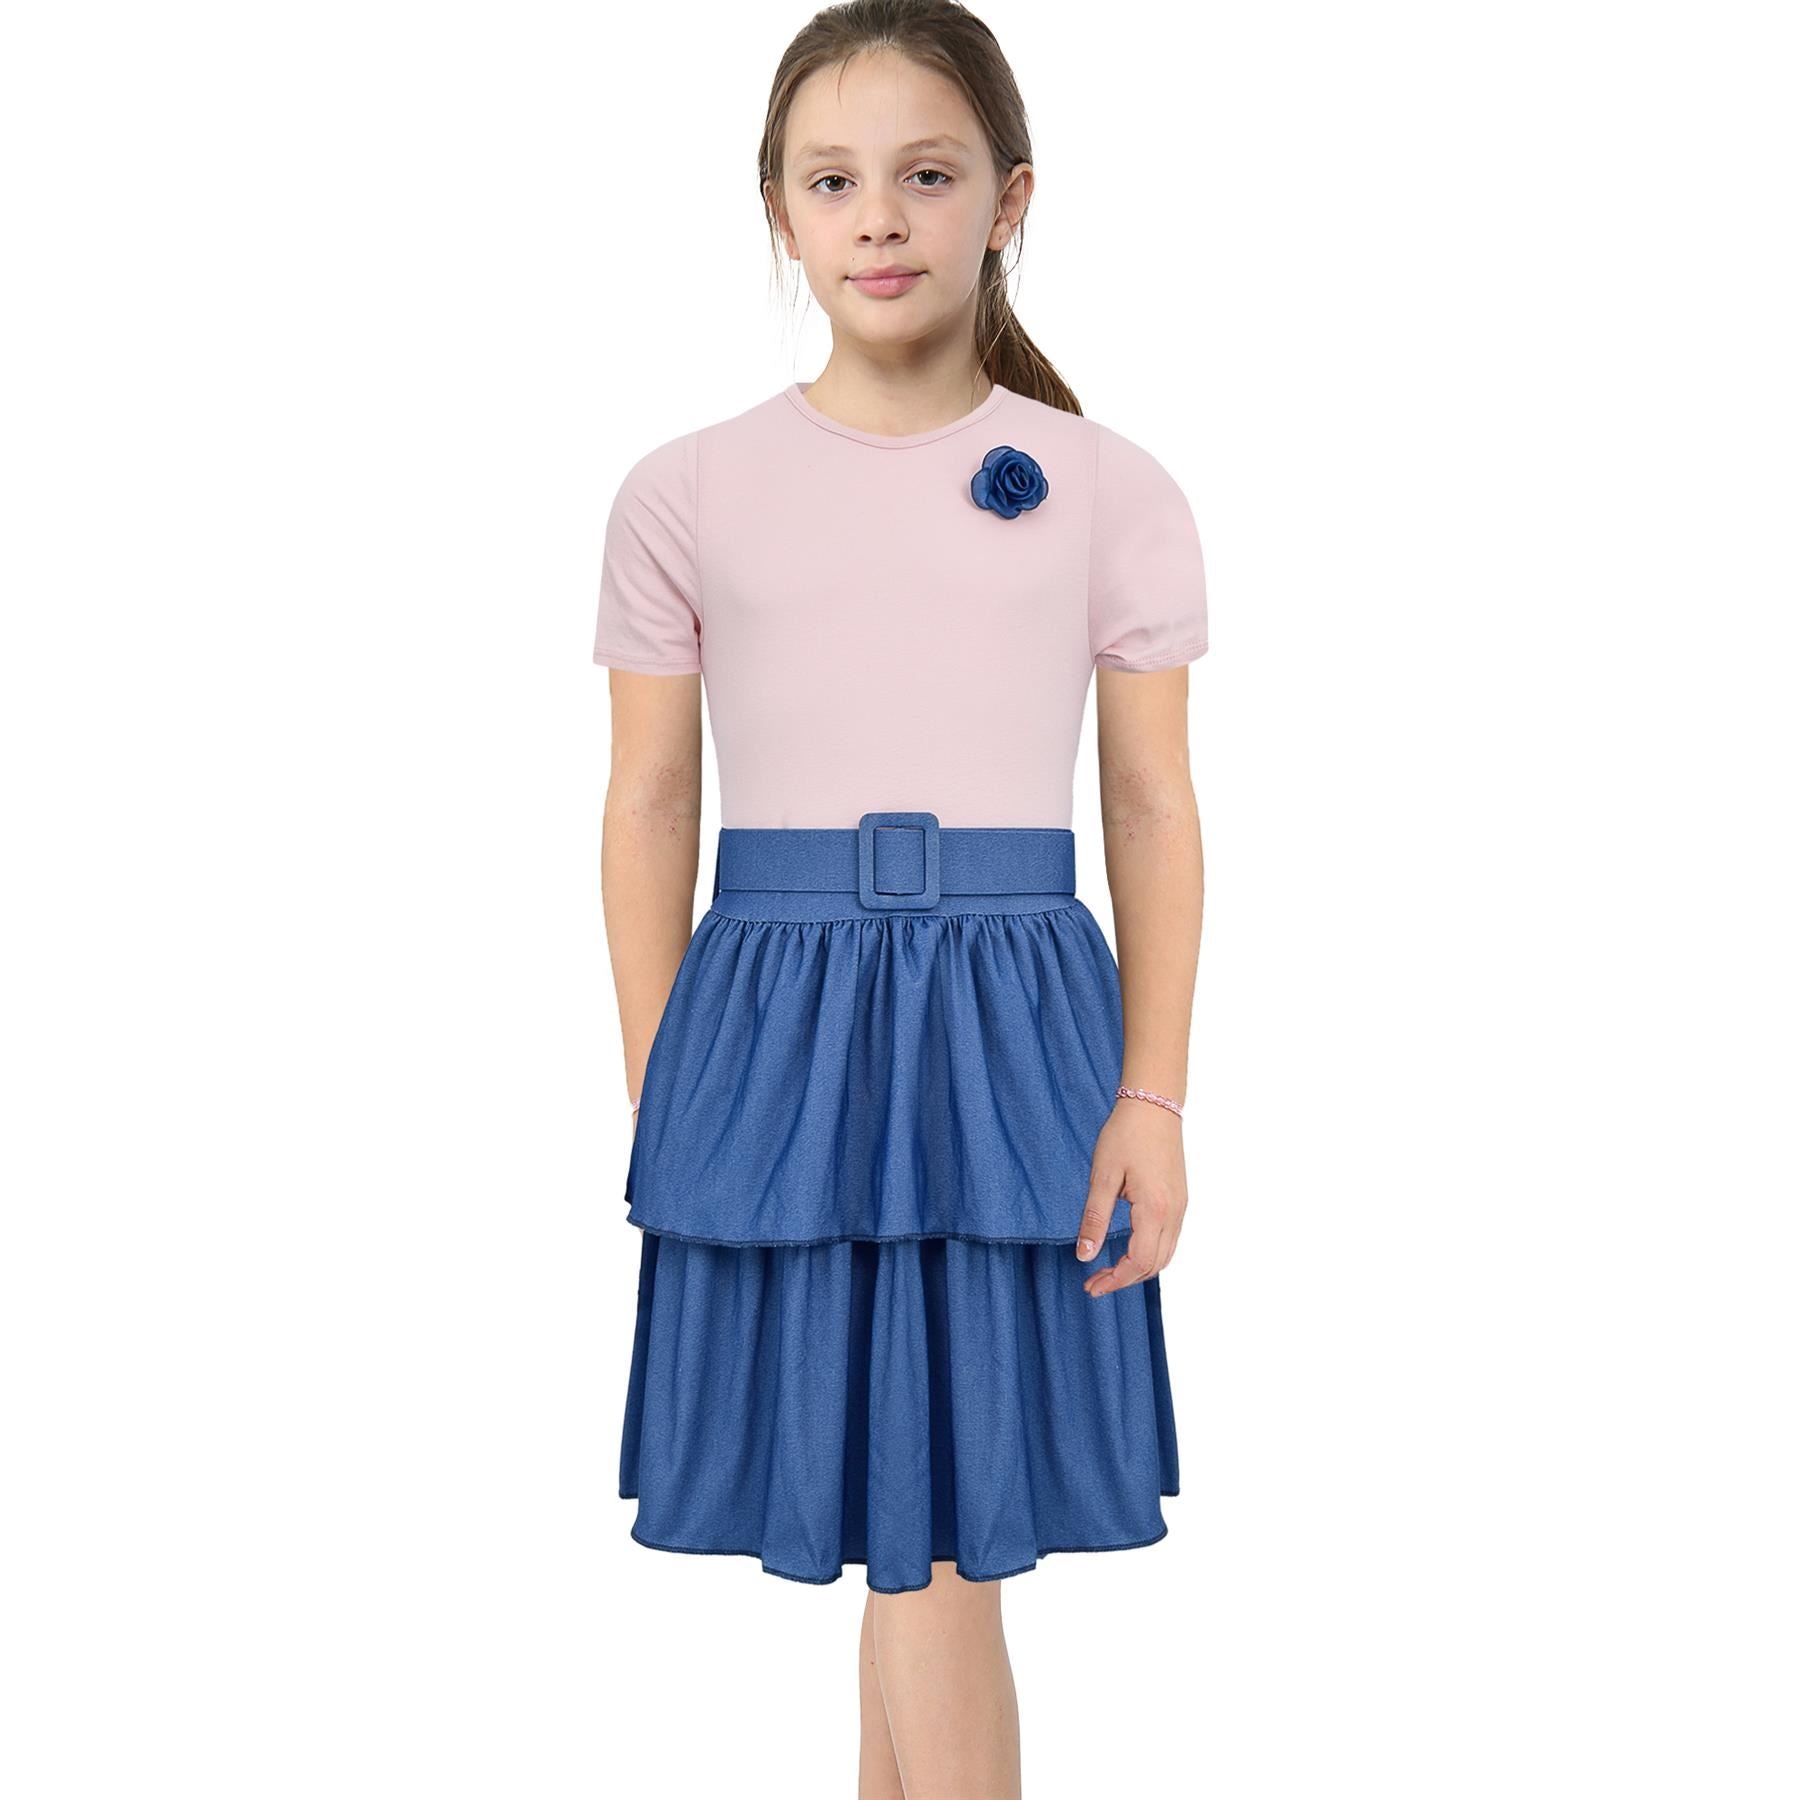 Kids Girls Summer Dress Casual Ruffle Party Dress